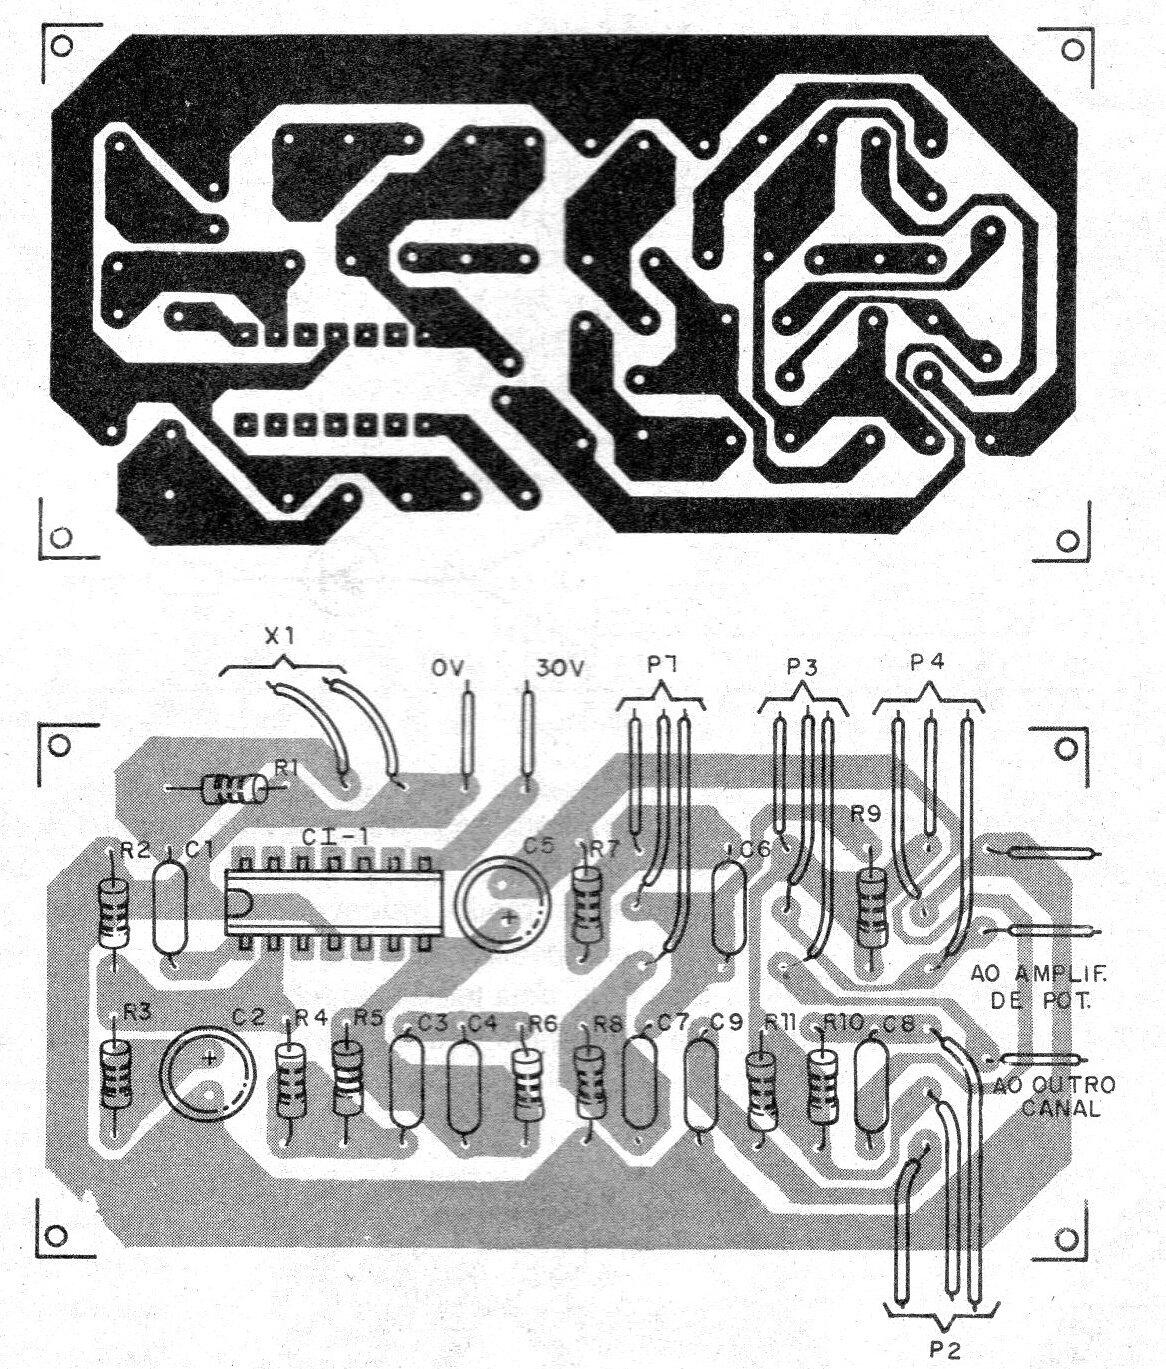    Figura 3 - Placa de circuito impreso
